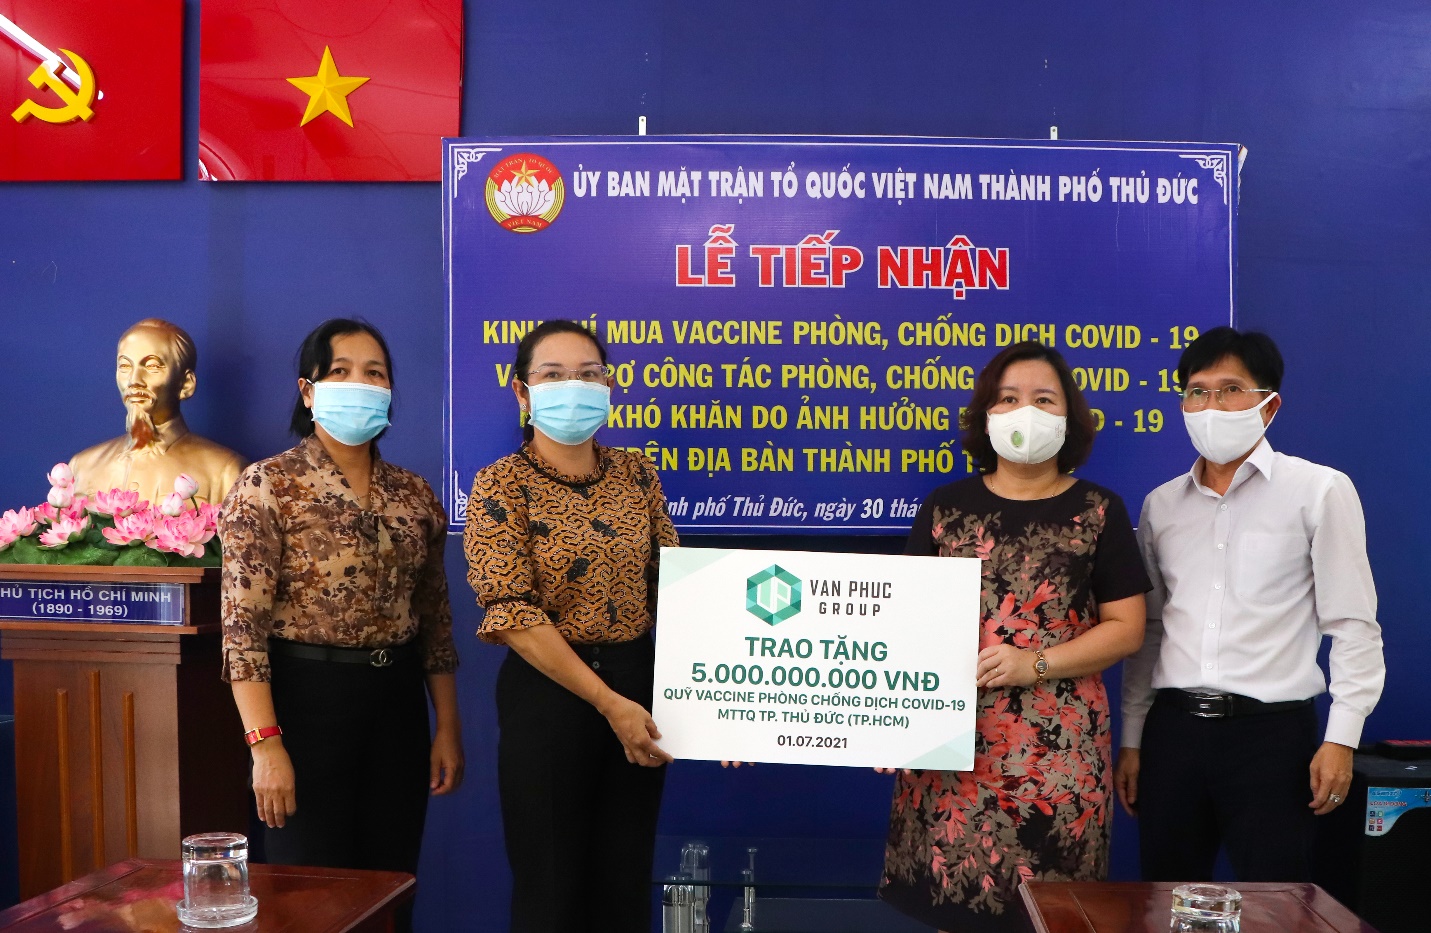 Đại diện Tập đoàn Vạn Phúc trao bảng tượng trưng 5 tỷ đồng ủng hộ Quỹ Phòng chống Covid-19 cho MTTQ Việt Nam TP. Thủ Đức - Ảnh: GP